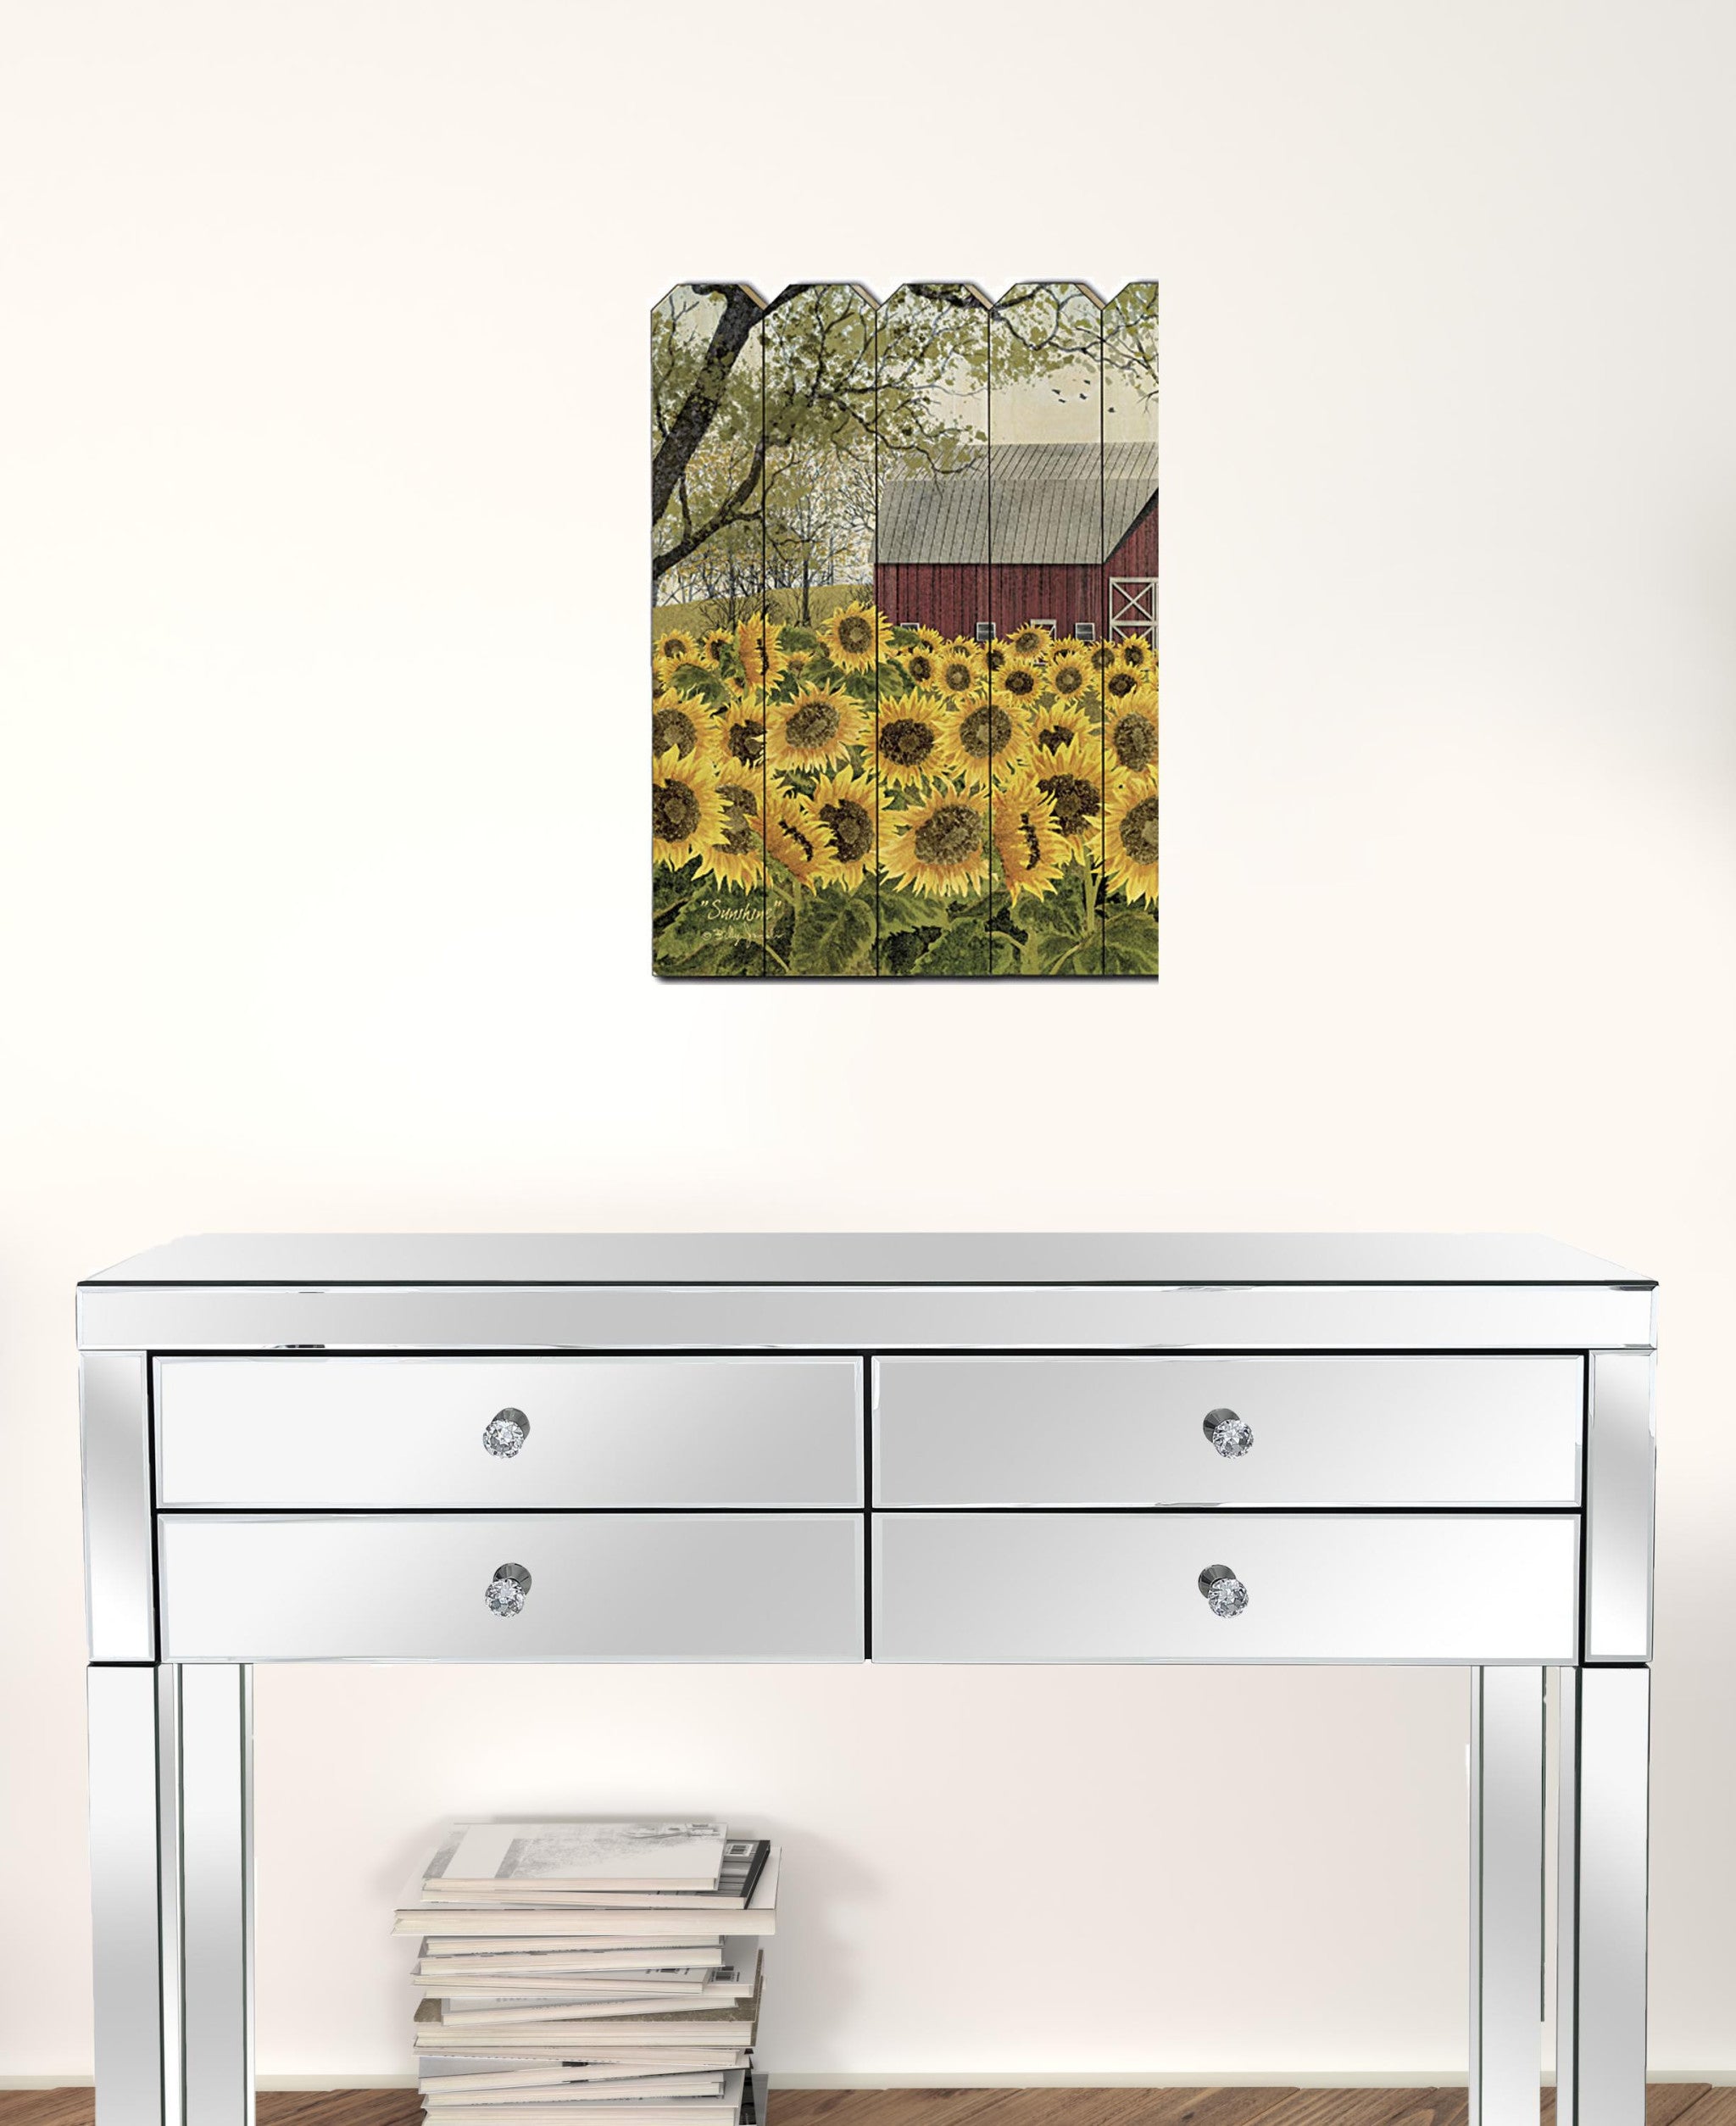 Sunshine 1 Unframed Print Wall Art